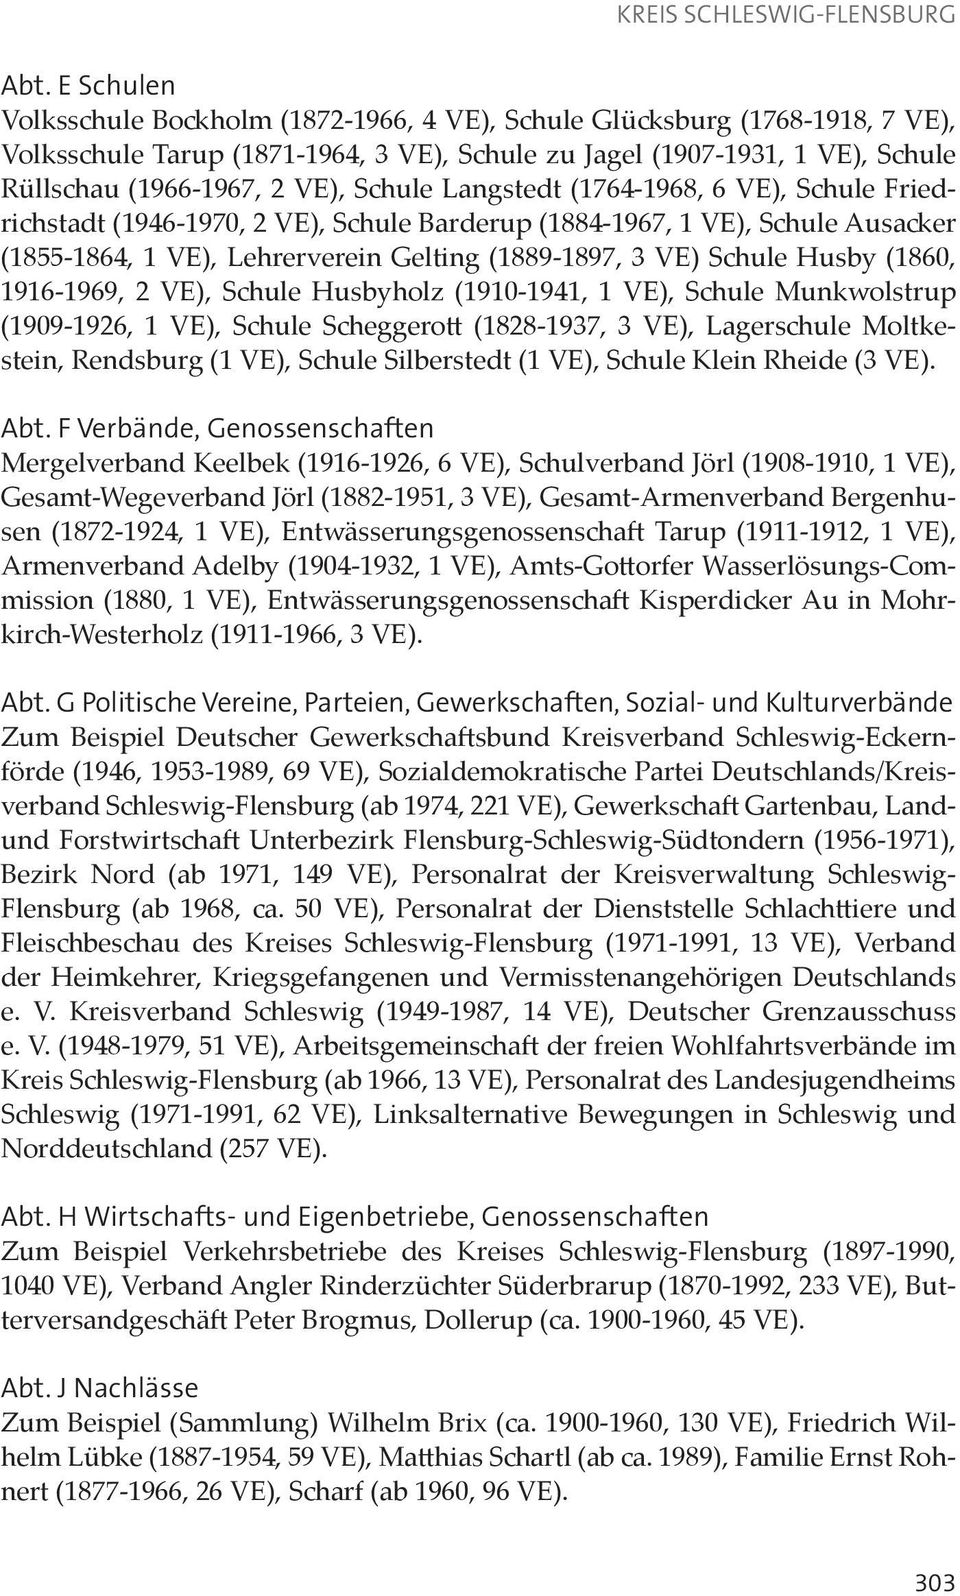 (1860, 1916-1969, 2 VE), Schule Husbyholz (1910-1941, 1 VE), Schule Munkwolstrup (1909-1926, 1 VE), Schule Scheggerott (1828-1937, 3 VE), Lagerschule Moltkestein, Rendsburg (1 VE), Schule Silberstedt